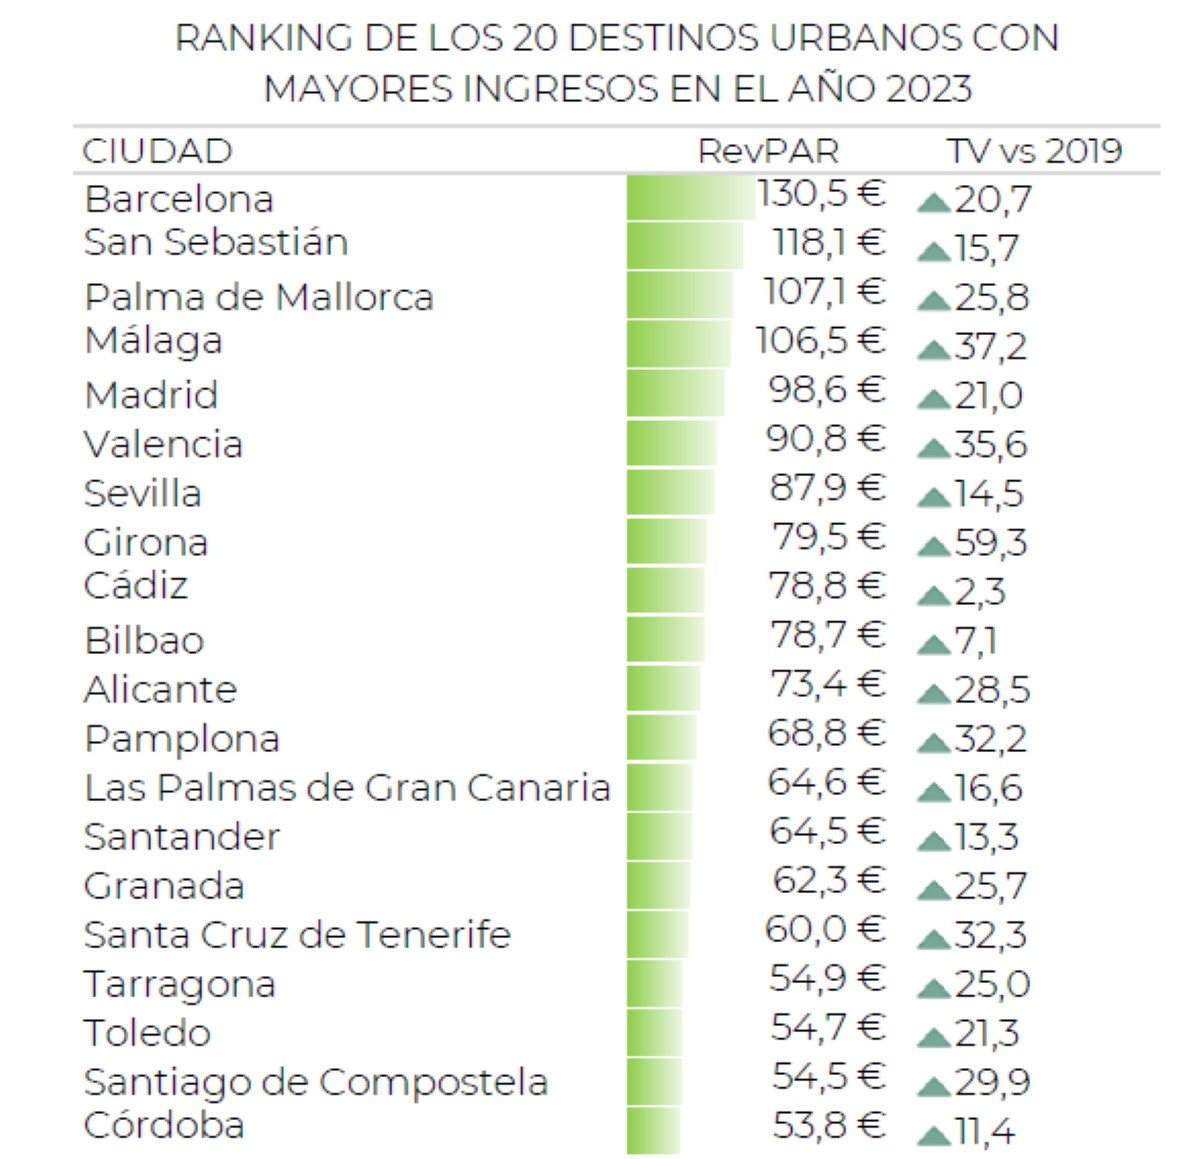 Los destinios turísticos españoles con mayores ingresos en 2023